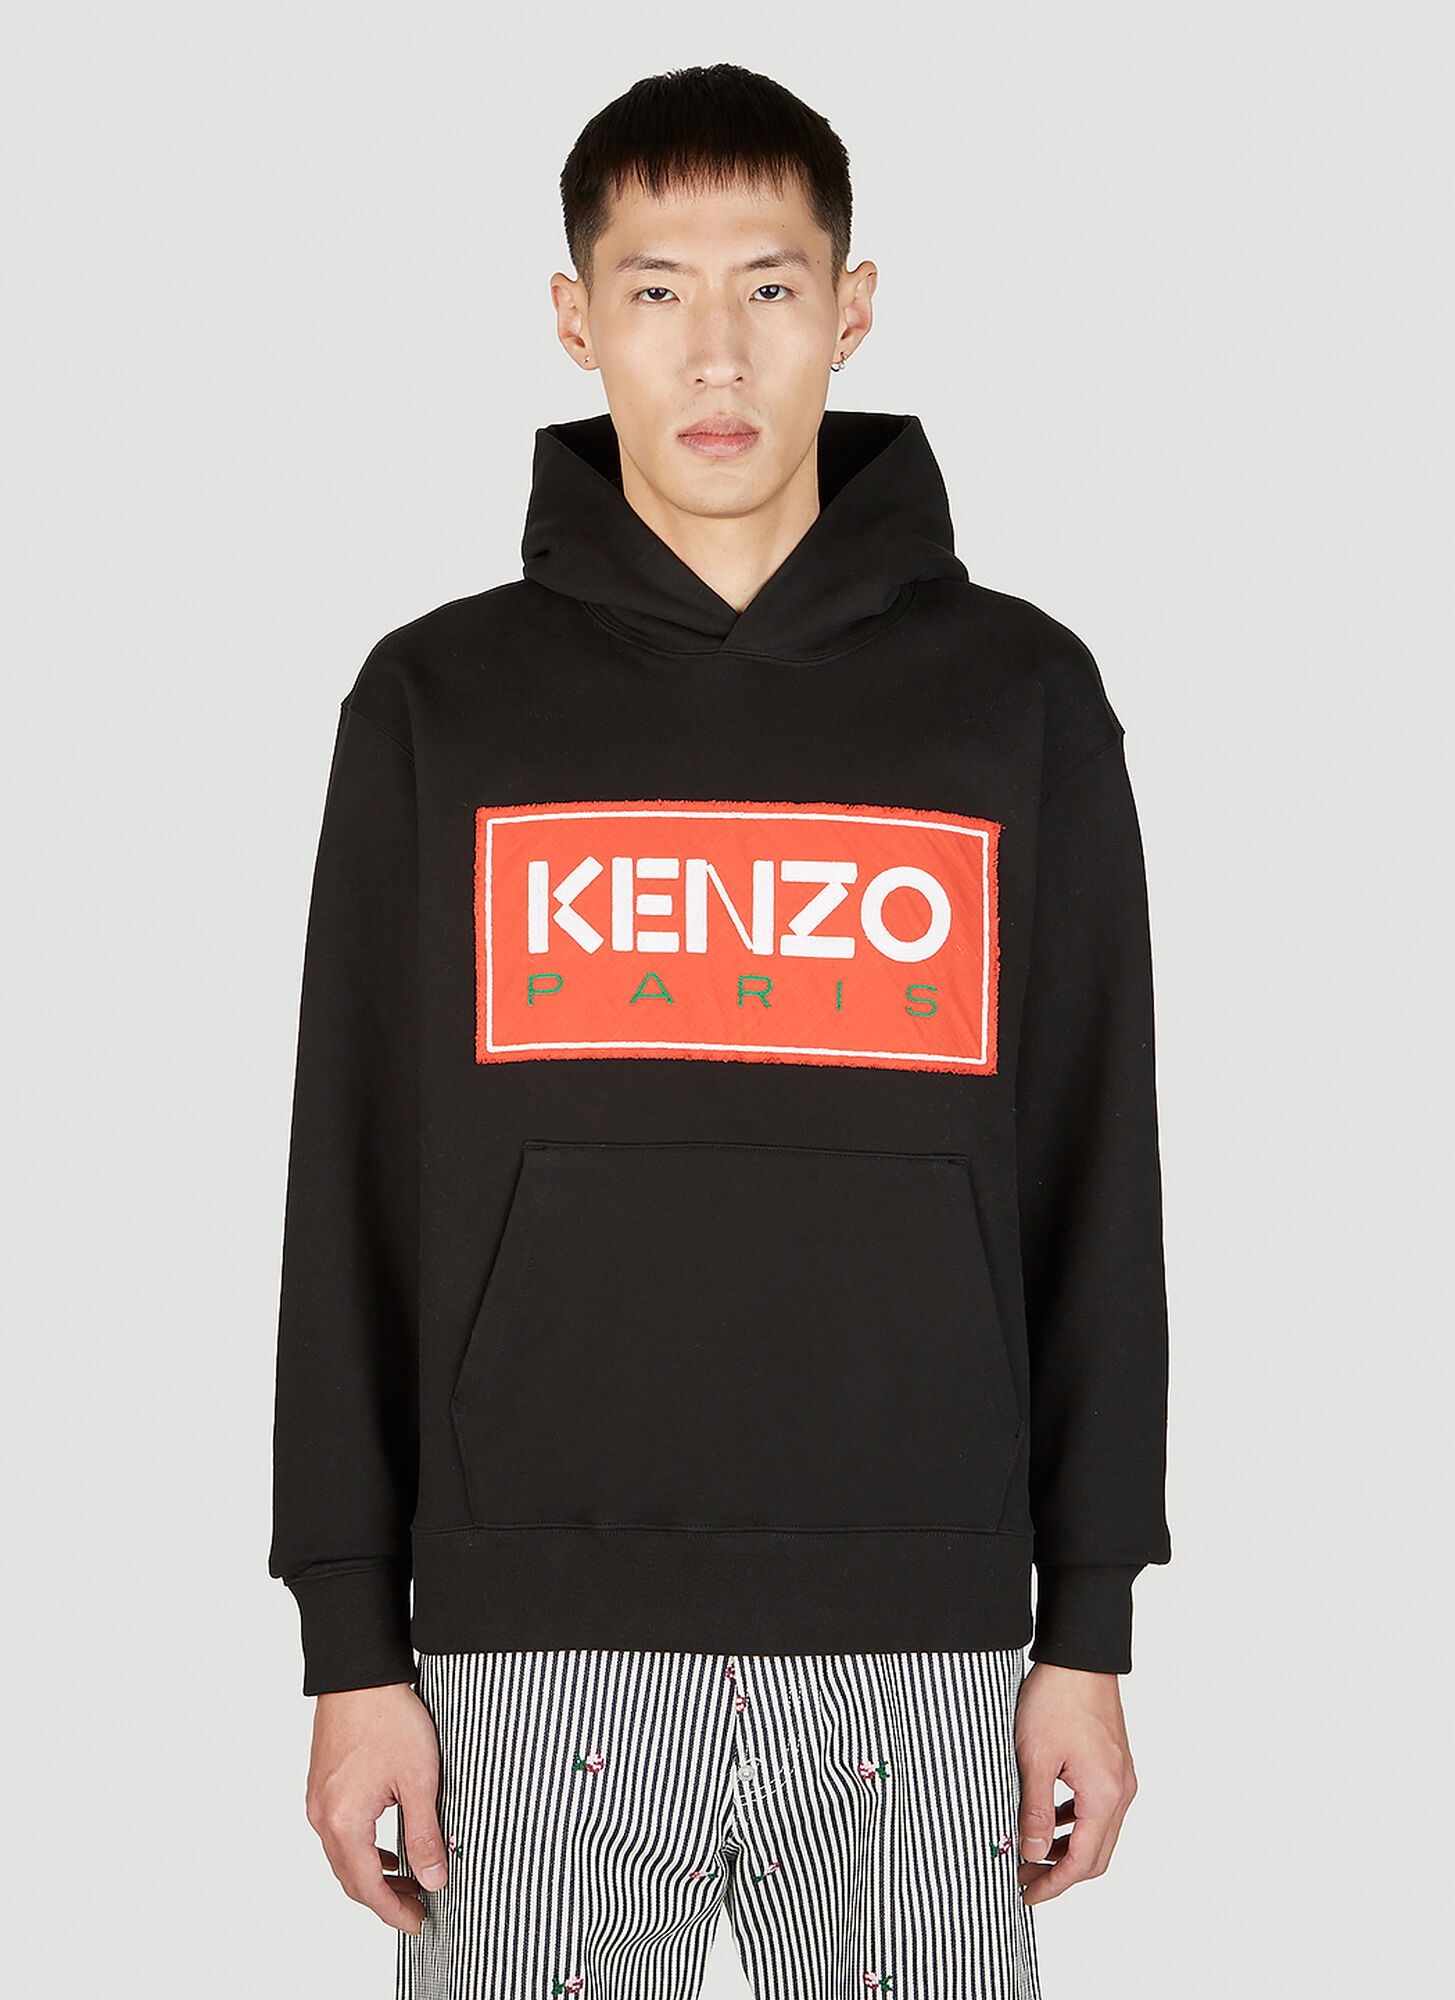 Kenzo Logo Patch Hooded Sweatshirt Male Black